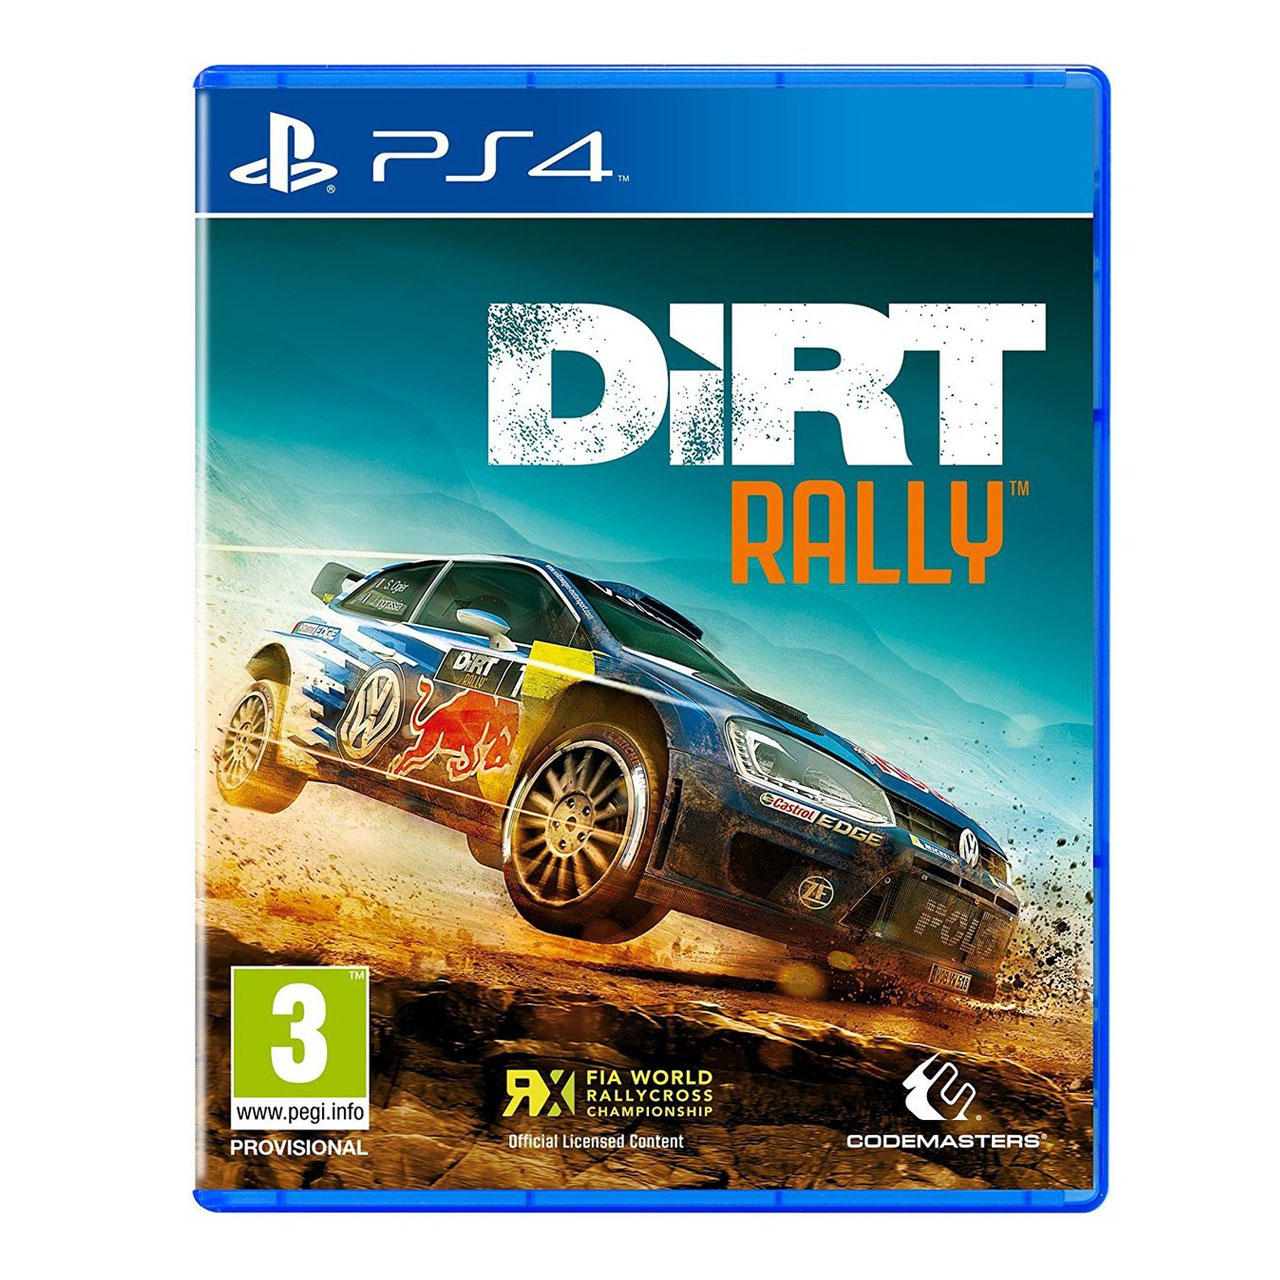 بازی Dirt Rally مخصوص PS4